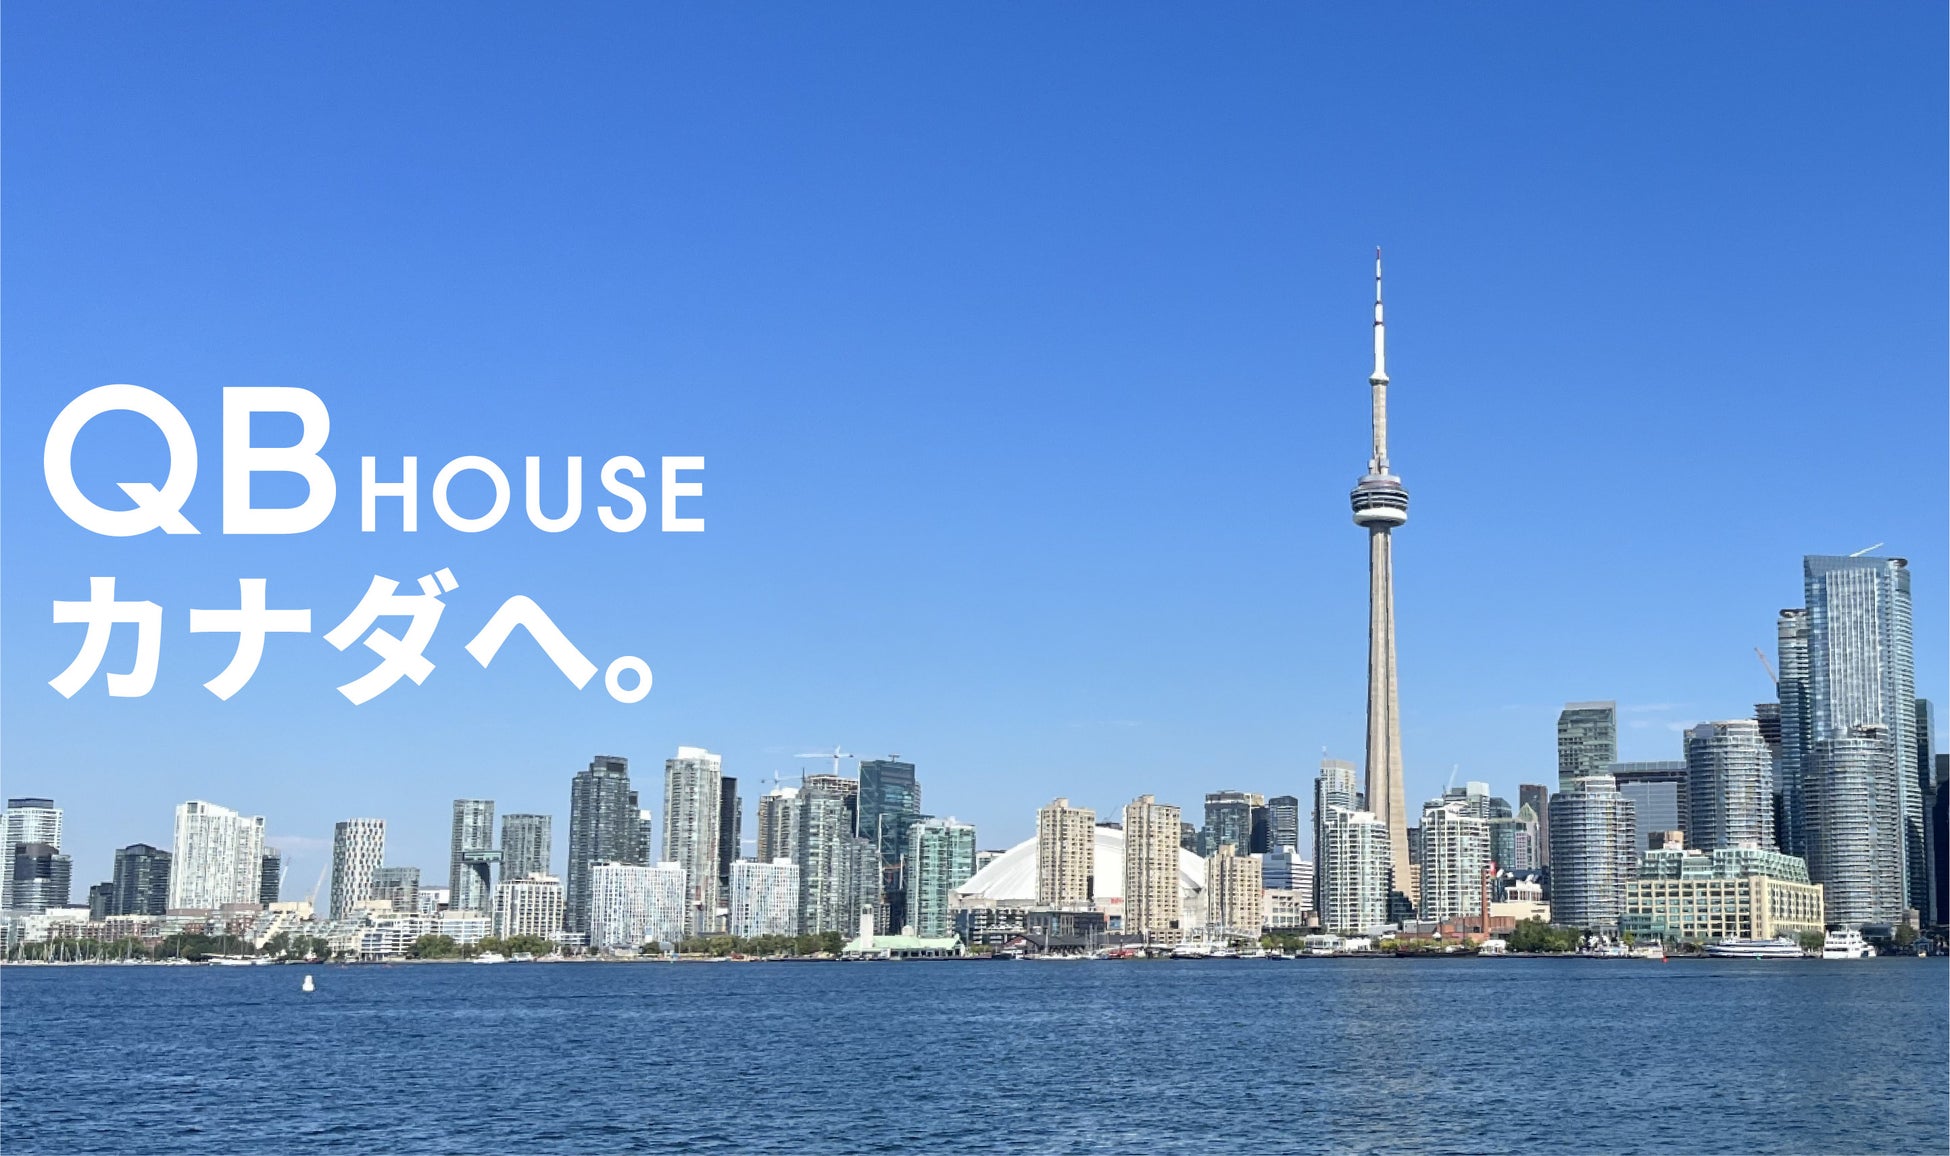 QB HOUSE、海外5か国目となるカナダへ進出。